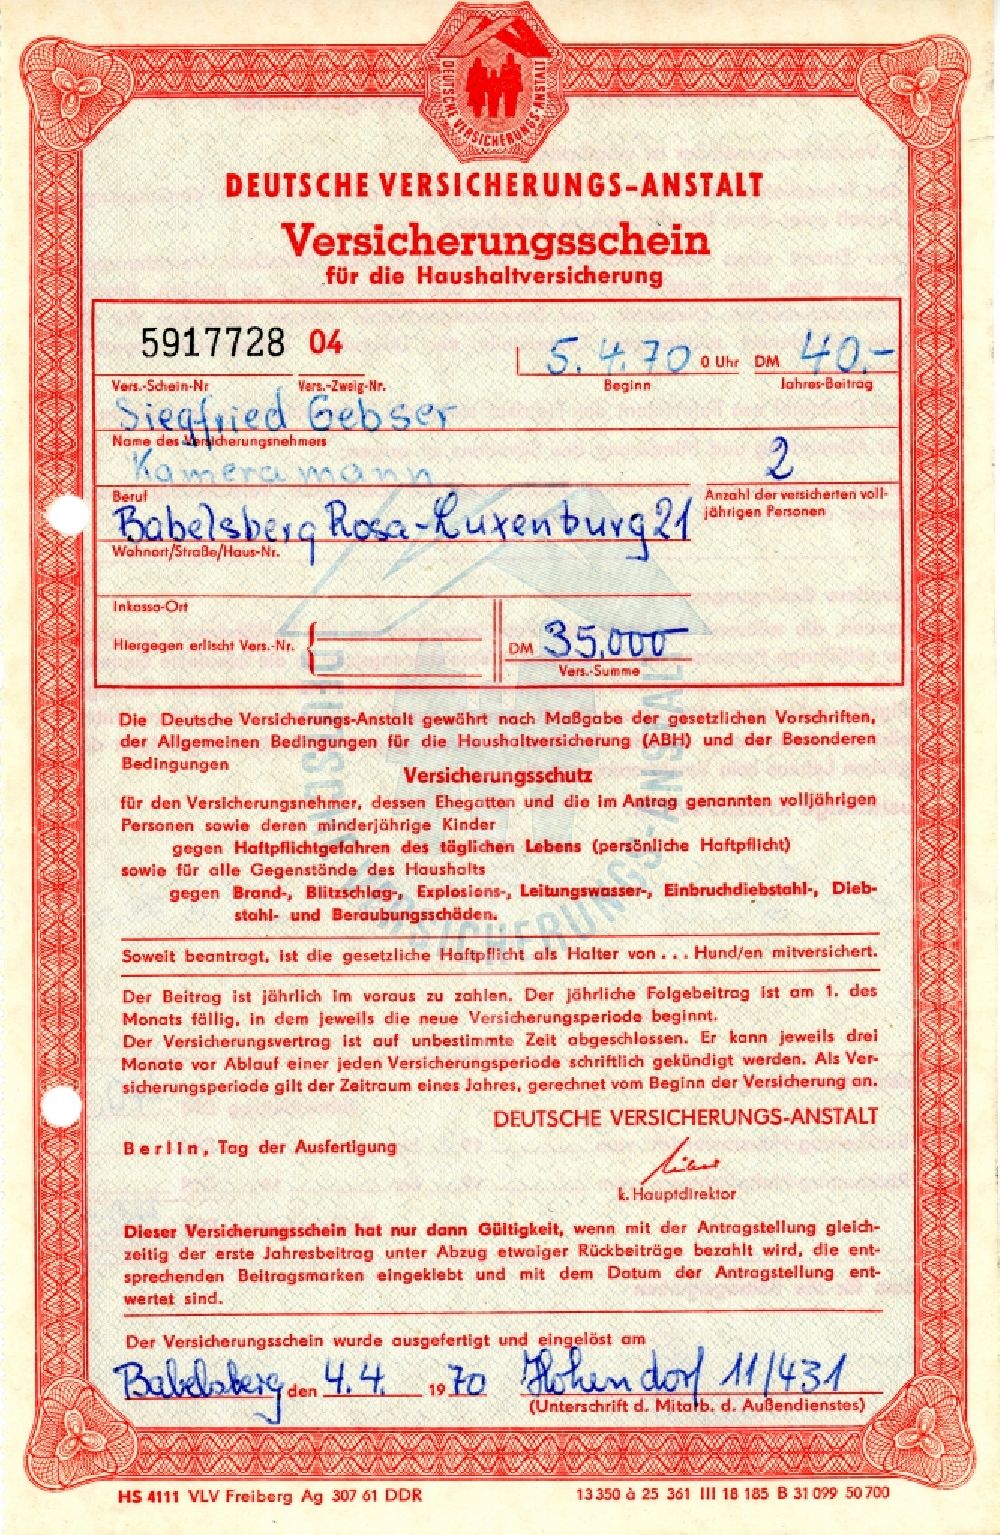 DDR-Bildarchiv: Potsdam - Versicherungsschein für die Haushaltsversicherung ausgestellt in Potsdam in Brandenburg in der DDR